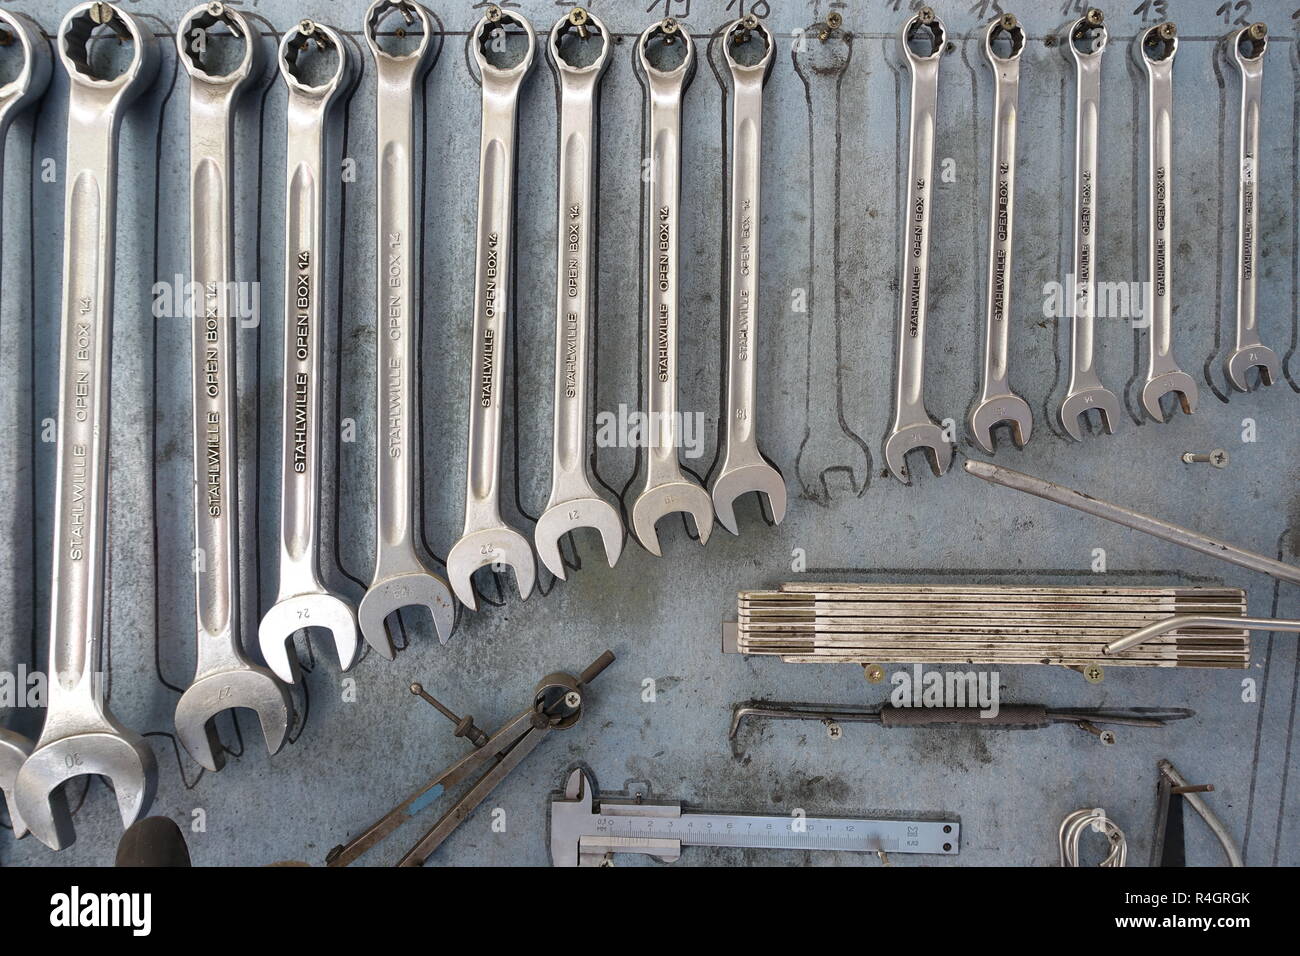 Herramientas, varias llaves en taller de reparación de automóviles, Alemania Foto de stock